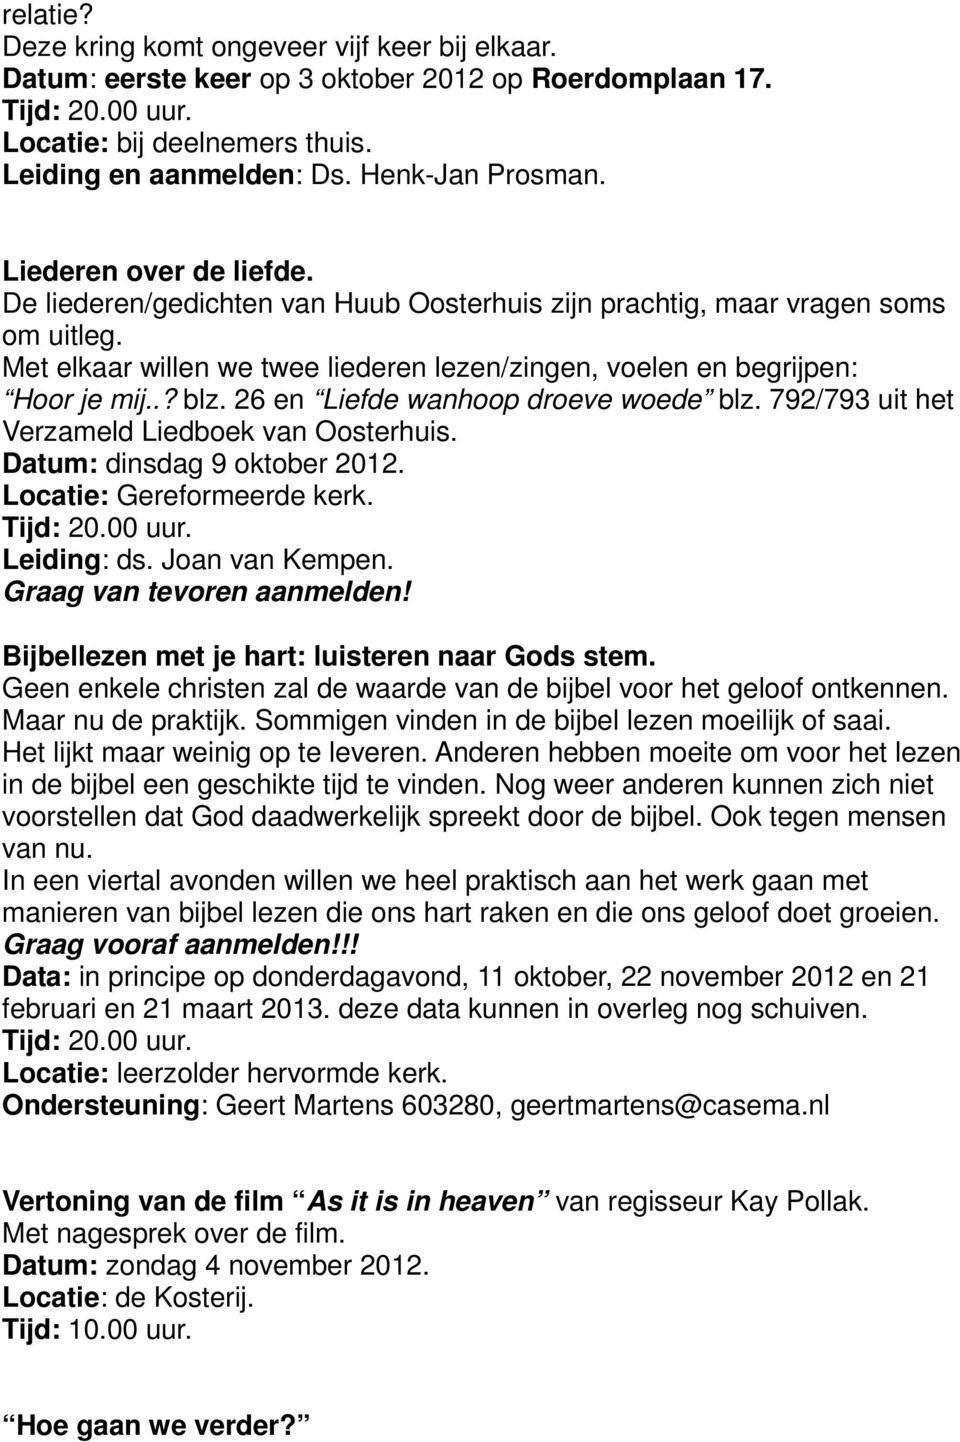 26 en Liefde wanhoop droeve woede blz. 792/793 uit het Verzameld Liedboek van Oosterhuis. Datum: dinsdag 9 oktober 2012. Leiding: ds. Joan van Kempen.